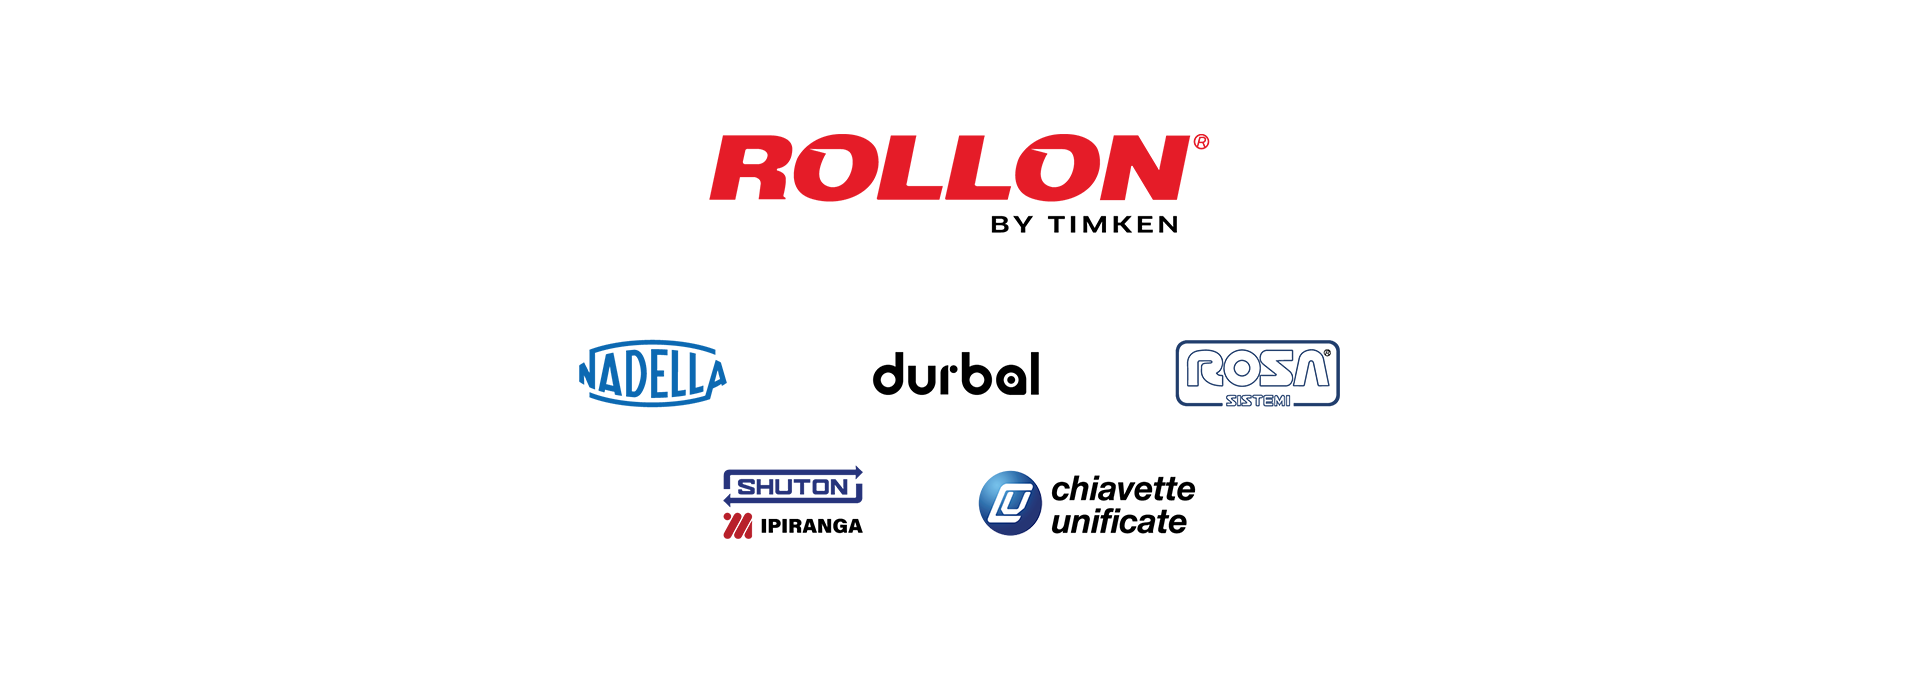 Rollon presenta il nuovo e ancora più completo portfolio prodotti